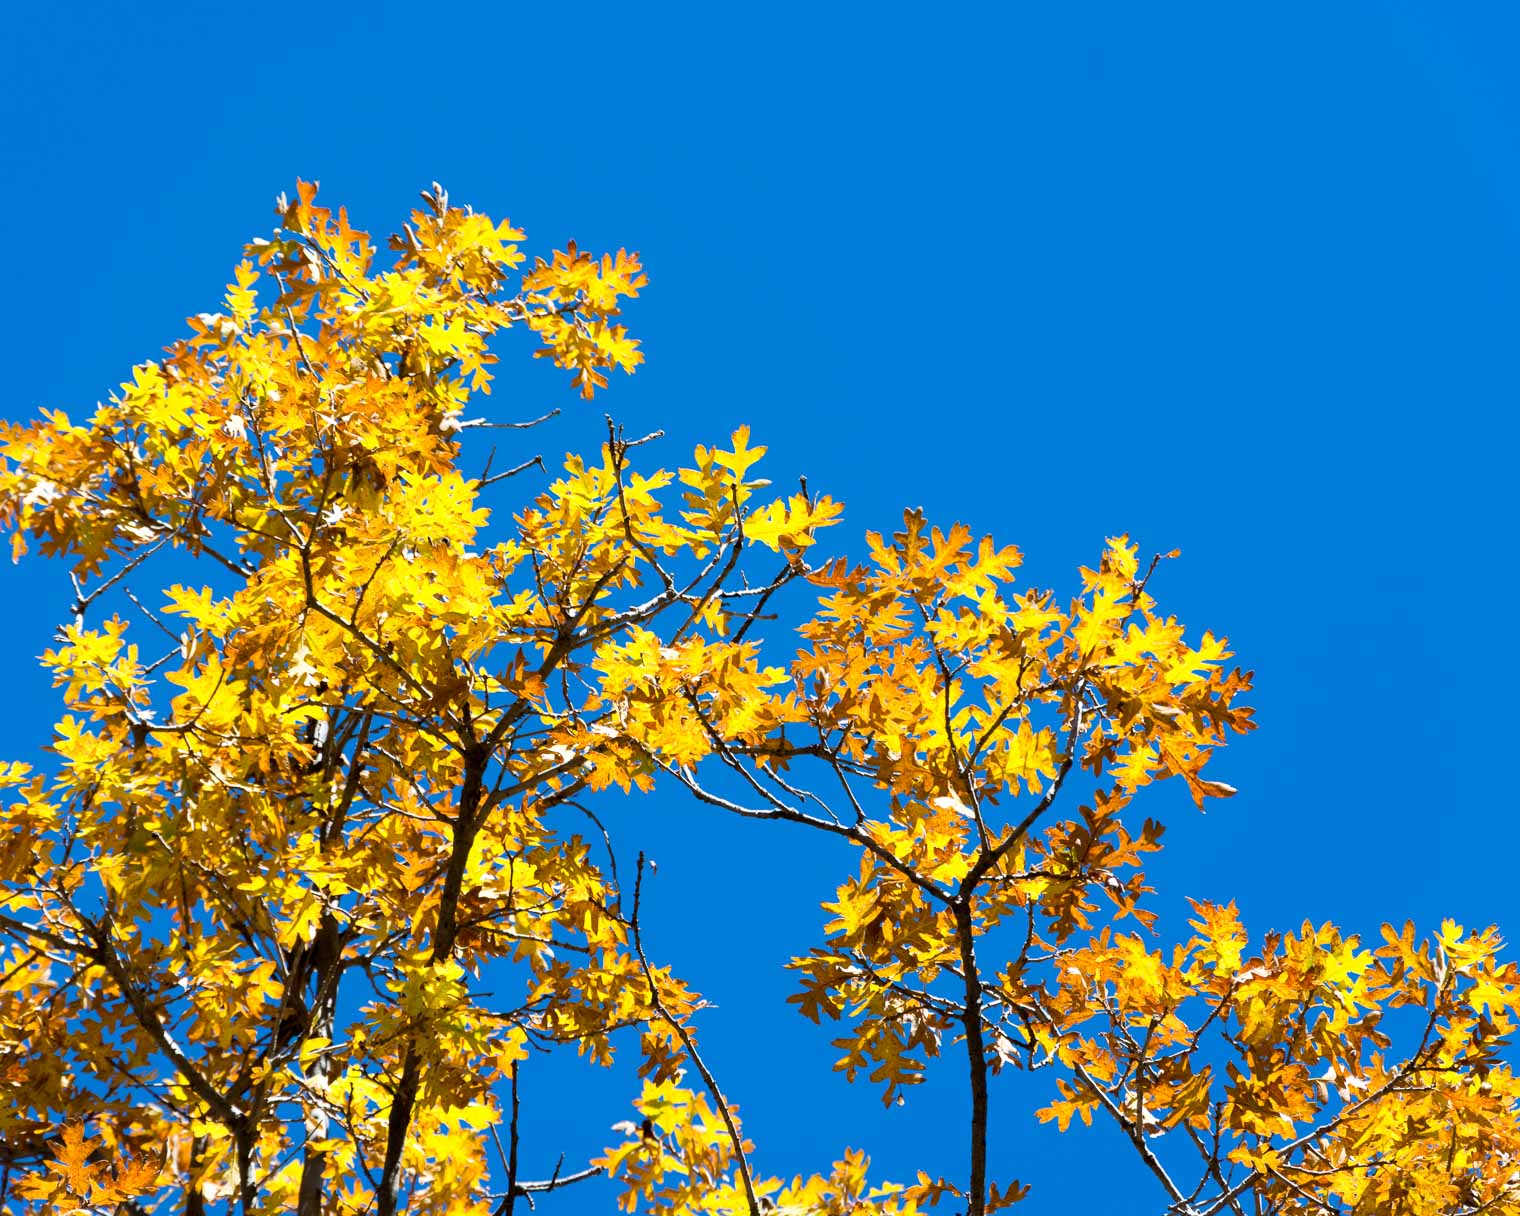 Catalina Highway, Arizona, Mount Lemmon, Autumn in Arizona, Oak Trees